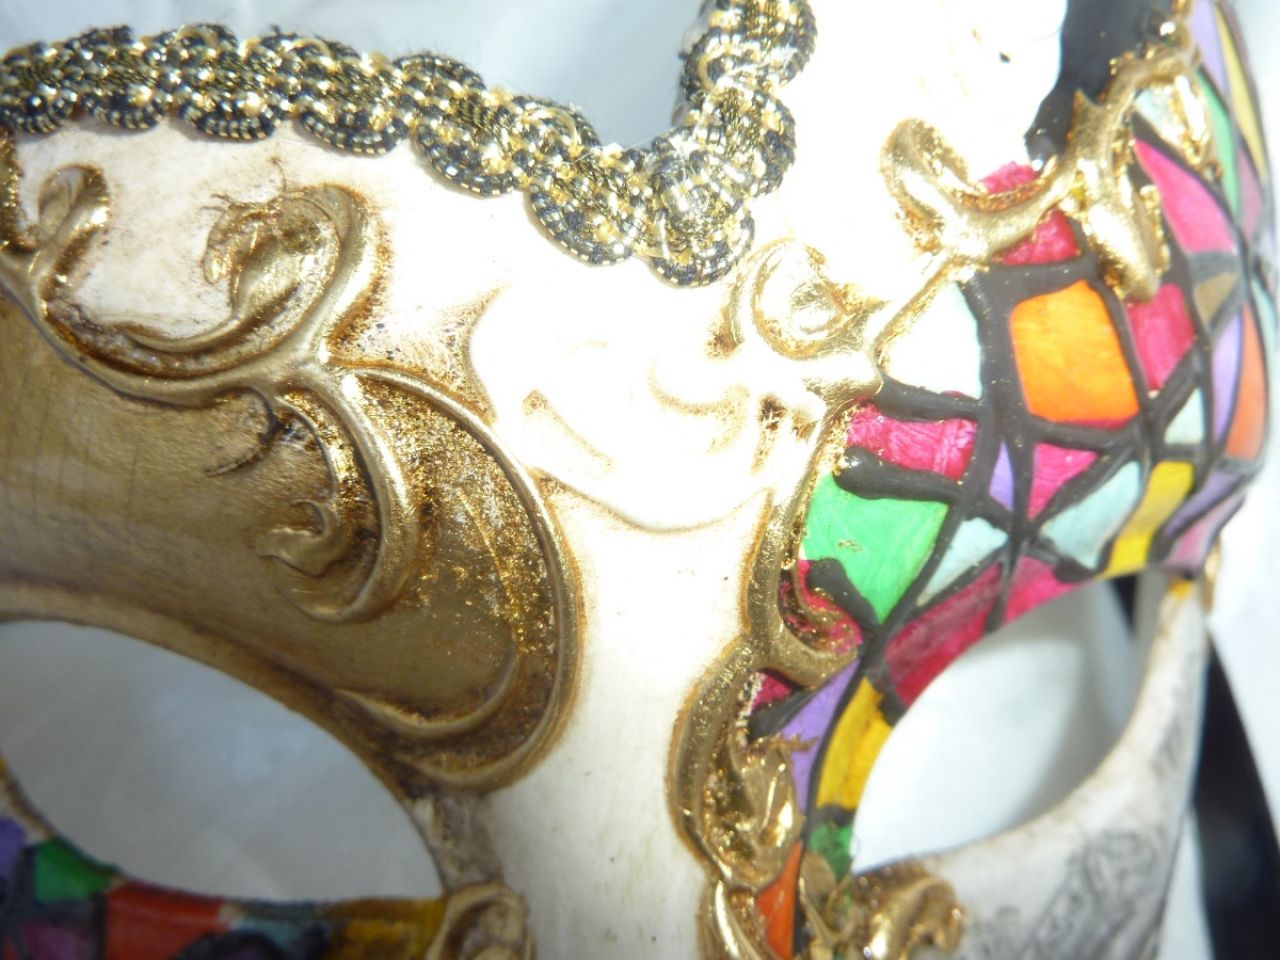 masque loup dÃ©corÃ© Ã  la main, multicolor avec arabesques dorÃ© et reproduction d'une vu de Venise